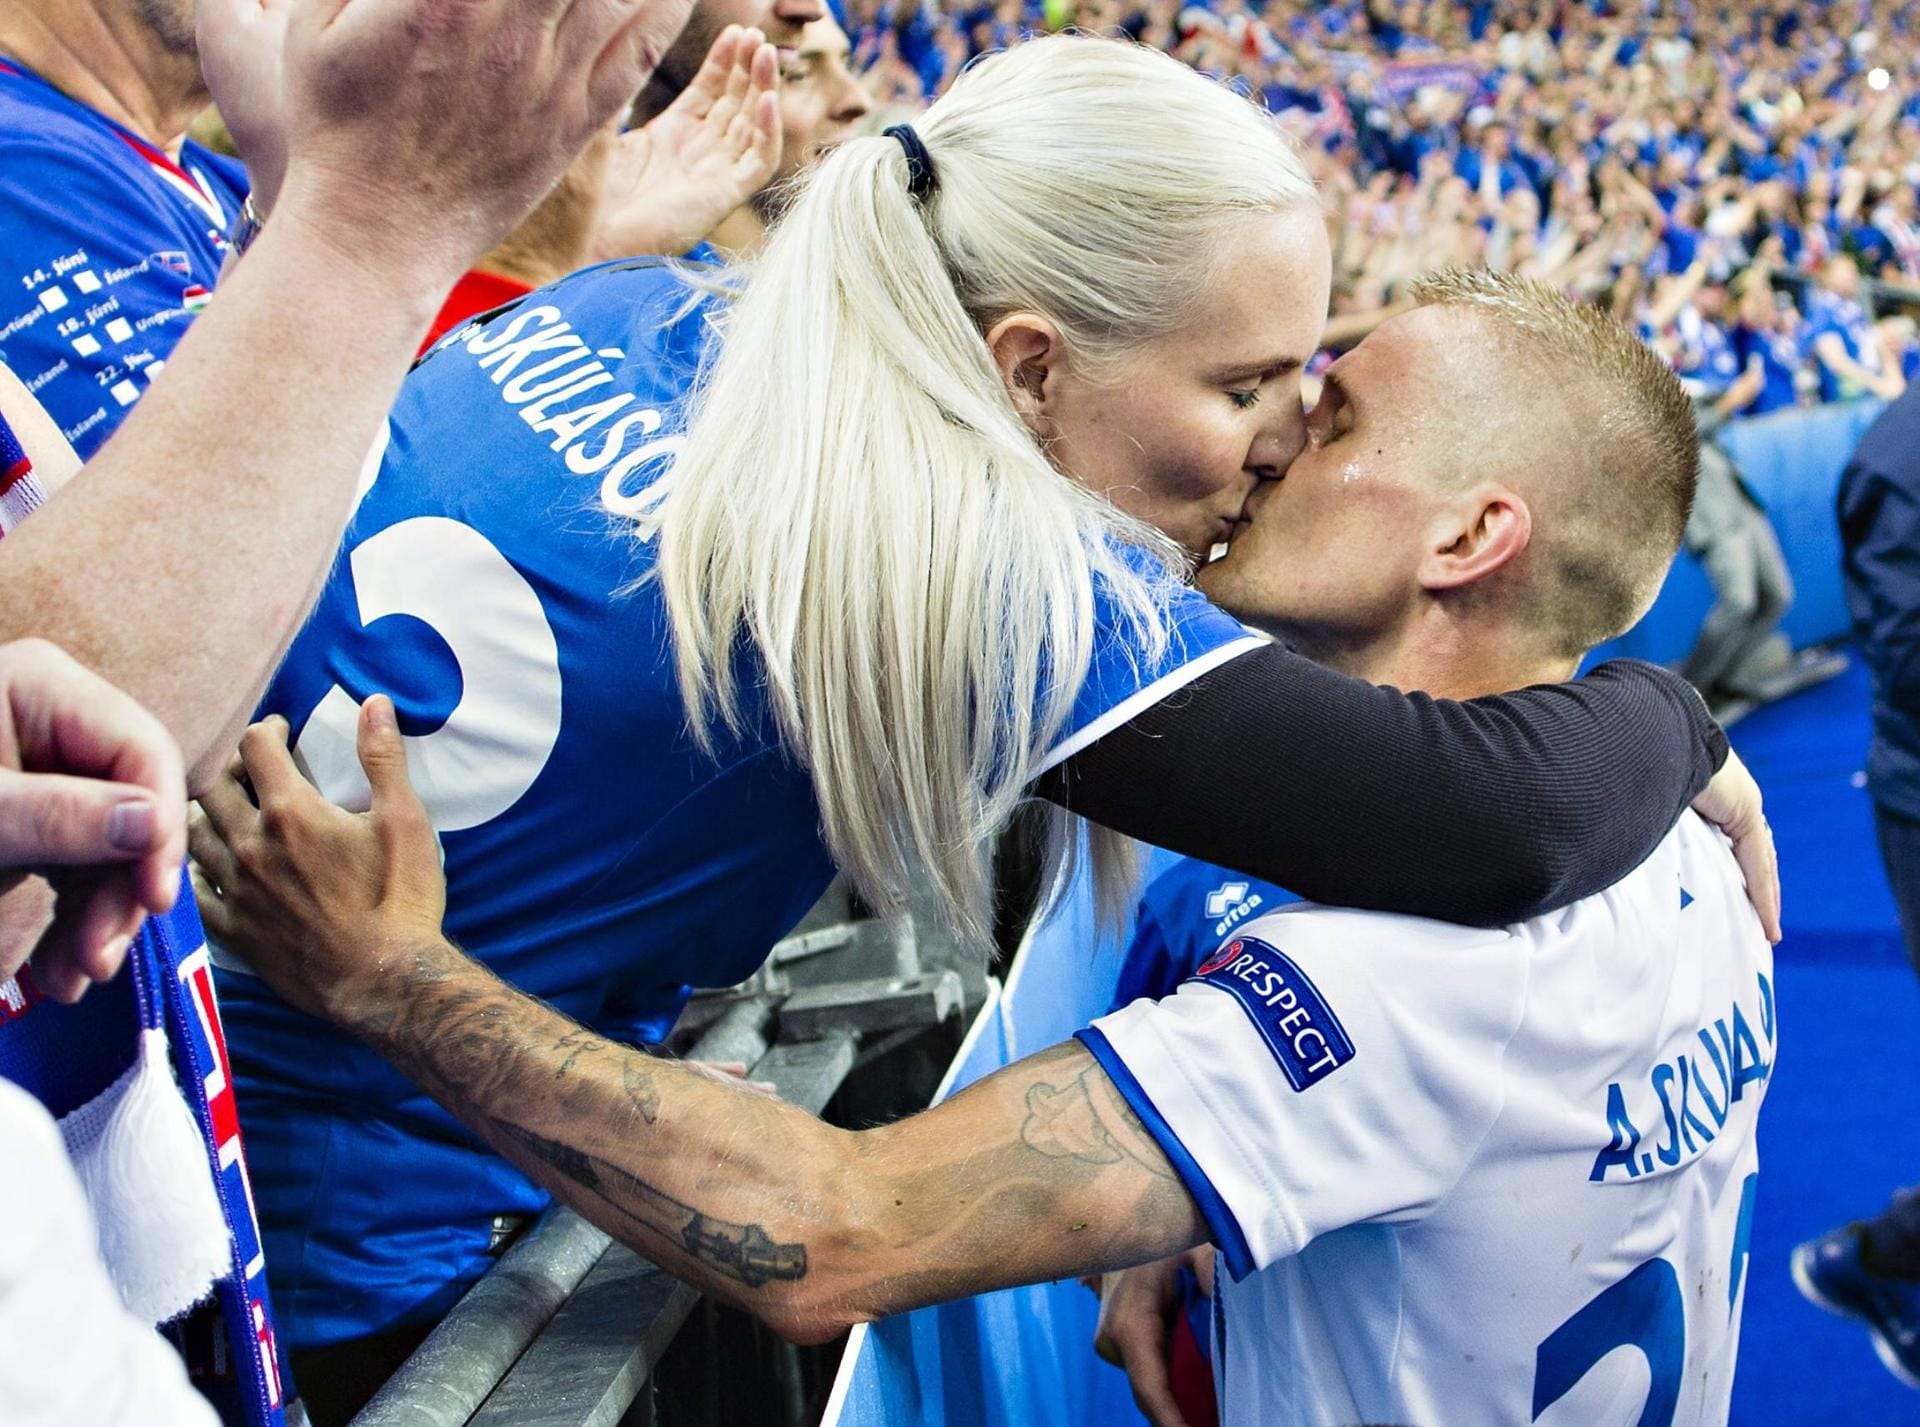 Island kickte sich in die Herzen der Fußballfans in ganz Europa. In die Herzen ihrer Frauen haben sie sich sowieso gespielt. Hier gibt es für Ari Skulason einen Kuss von seiner Frau.